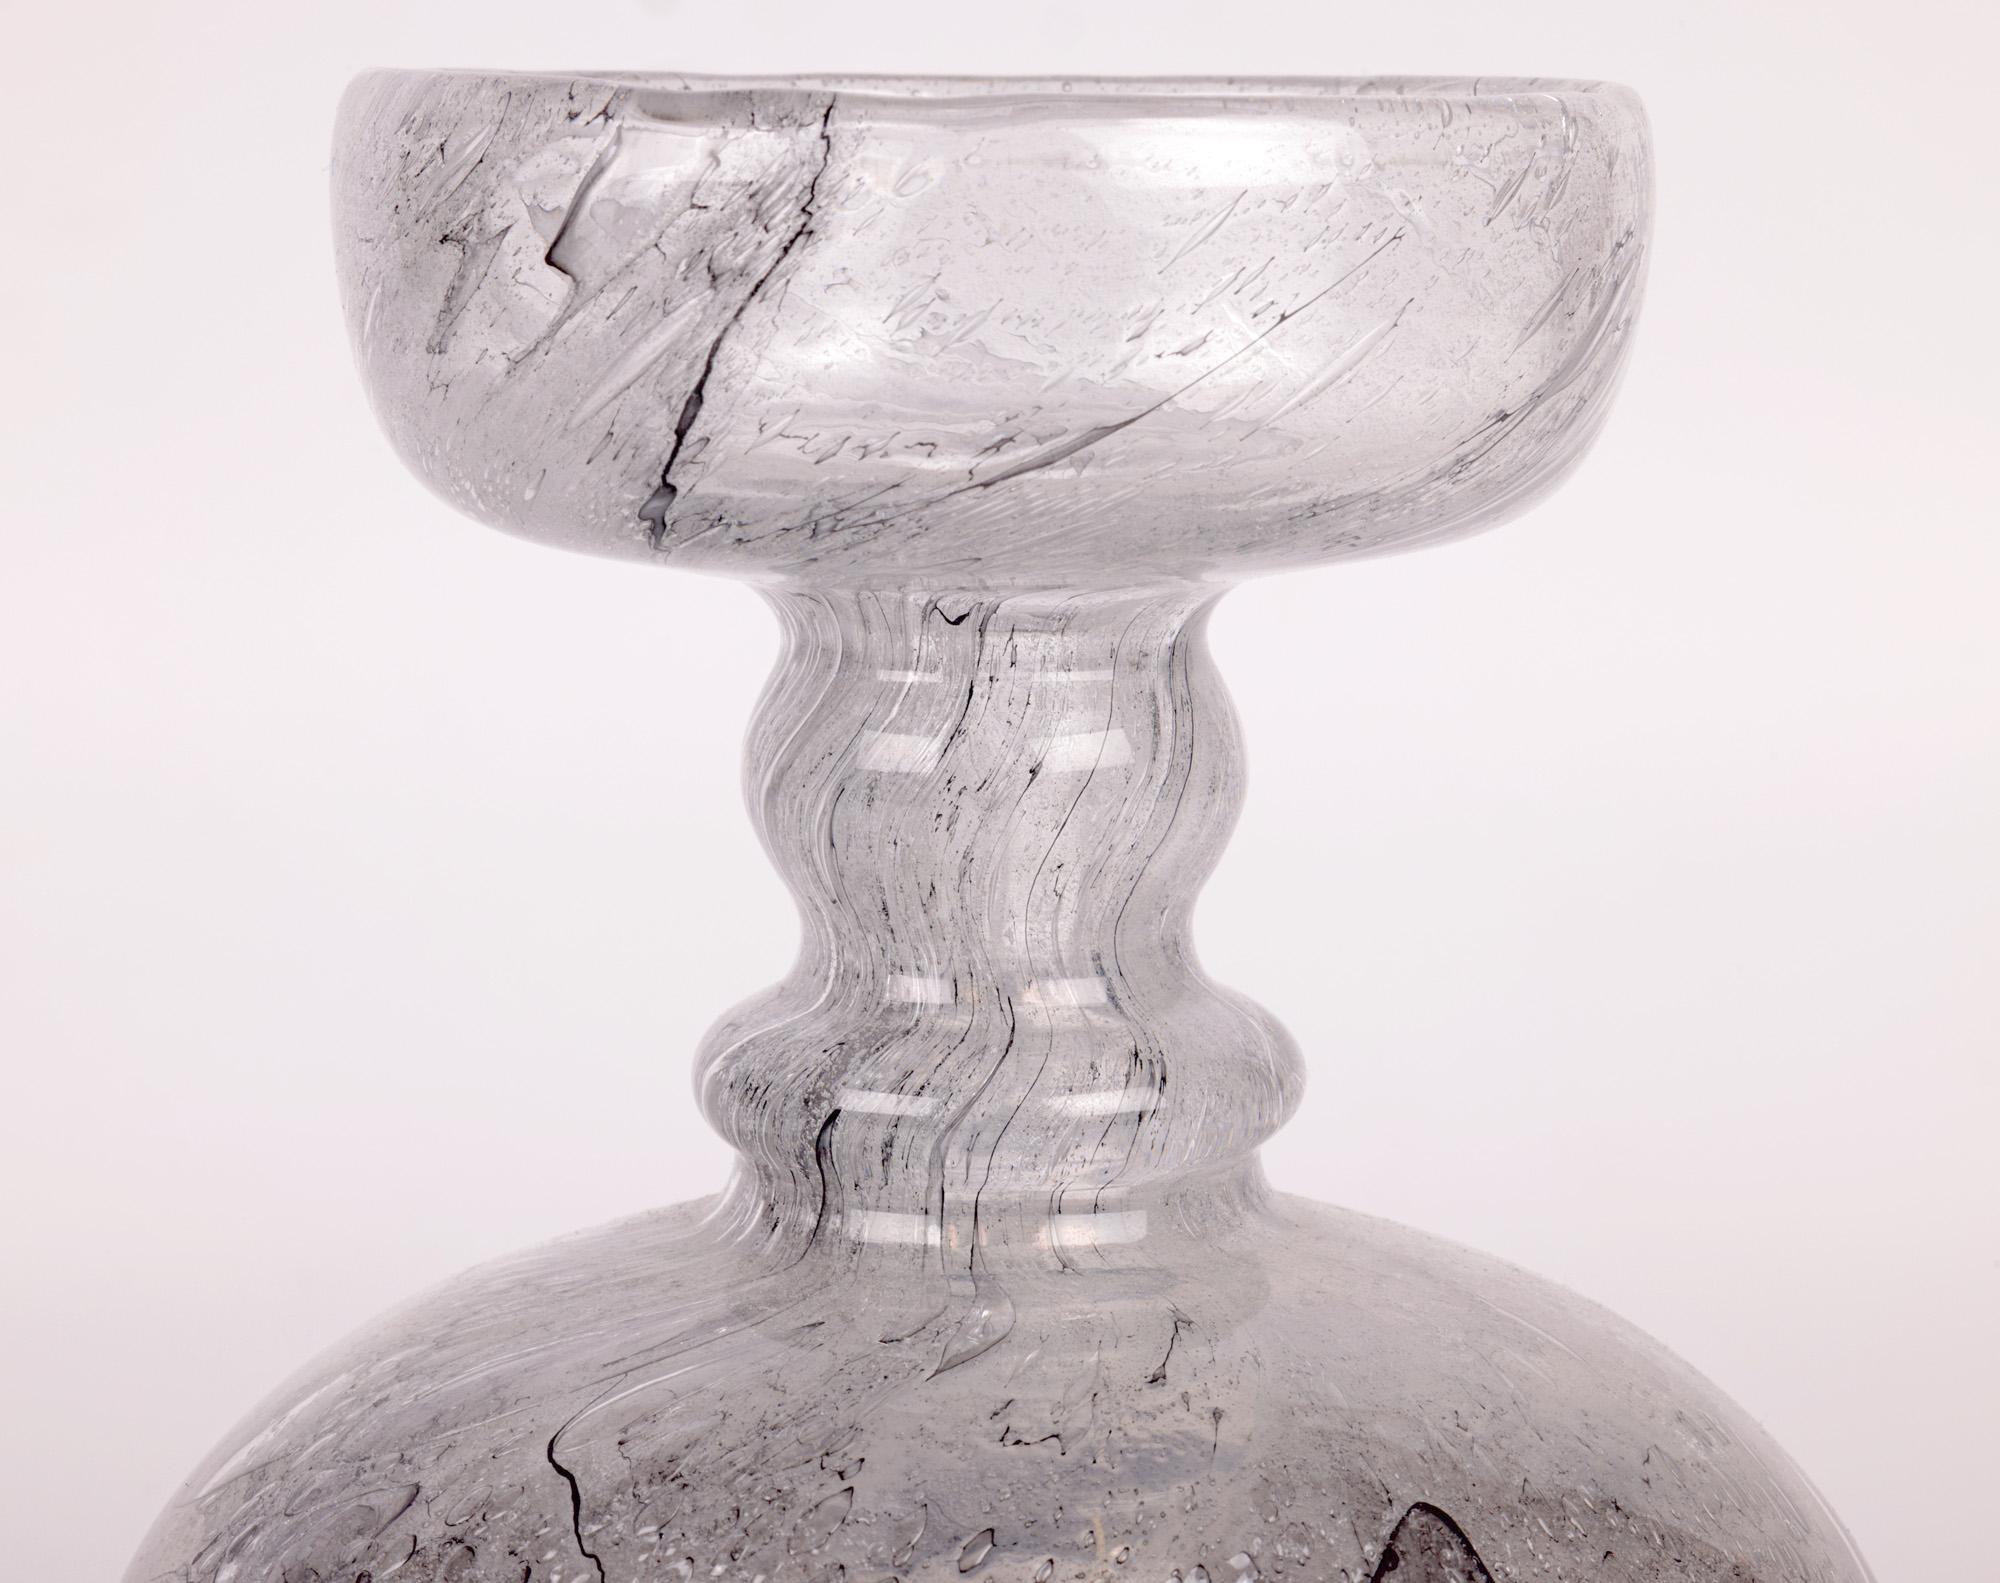 Un superbe vase en verre d'art allemand du milieu du siècle, Scheiergraphit, fabriqué par les célèbres verriers Peill & Putzler et conçu par Horst Tüselmann dans les années 1960. Le vase en verre de cristal soufflé à la main est fortement marqué par